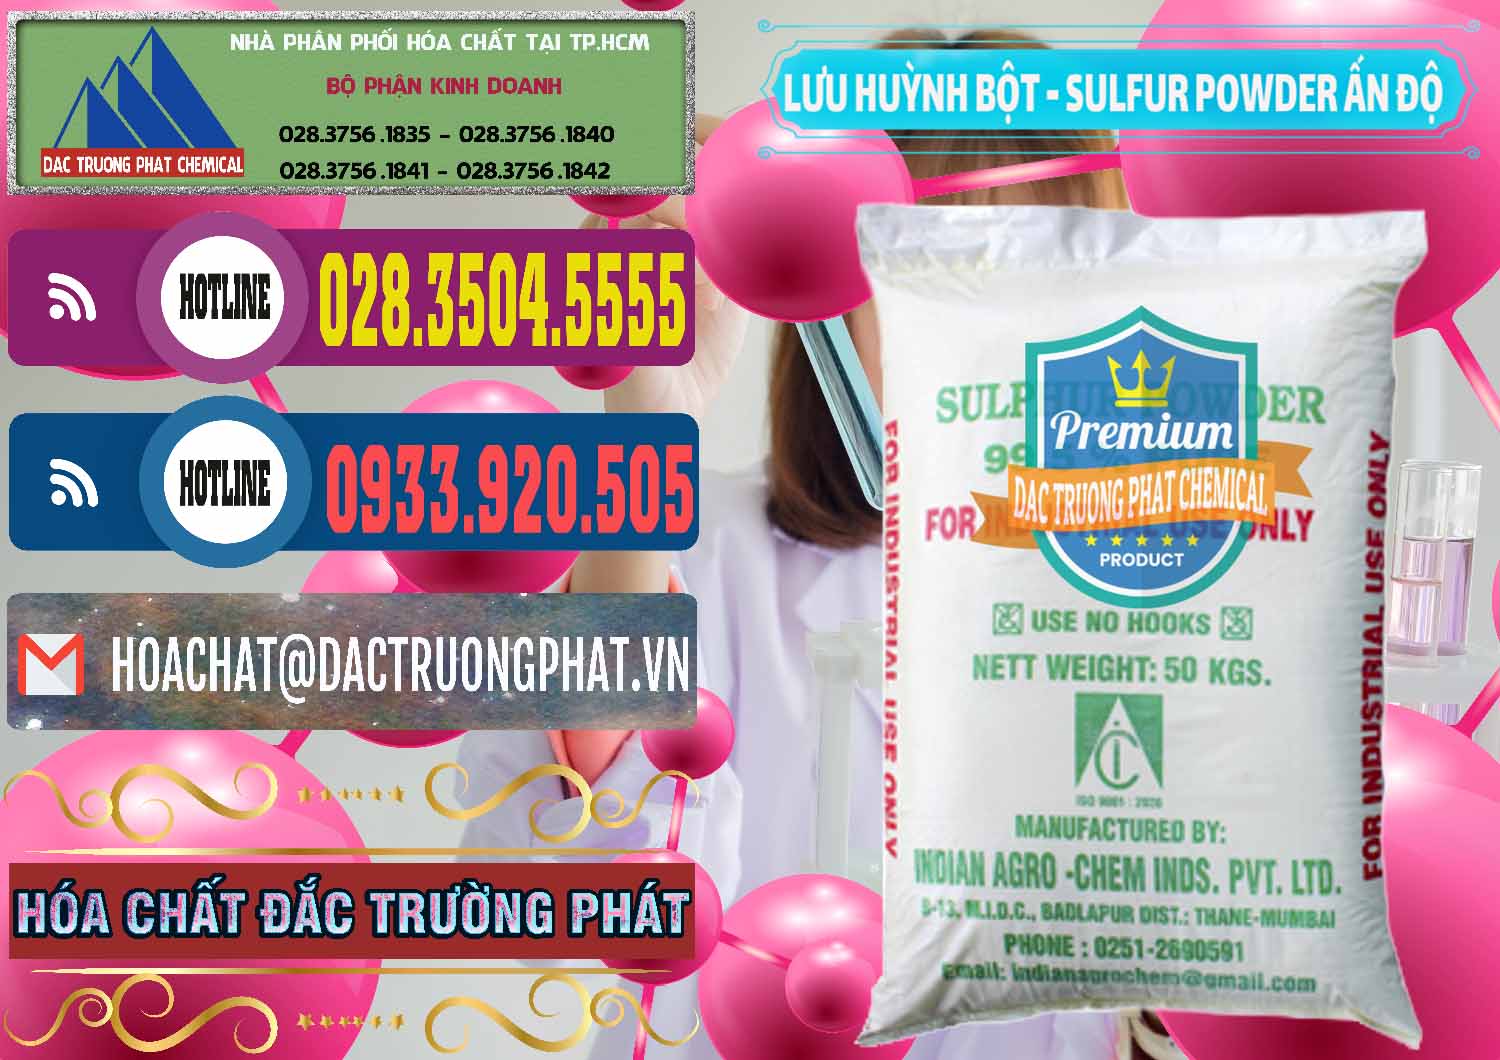 Nhà cung ứng & bán Lưu huỳnh Bột - Sulfur Powder Ấn Độ India - 0347 - Cty phân phối & cung cấp hóa chất tại TP.HCM - muabanhoachat.com.vn